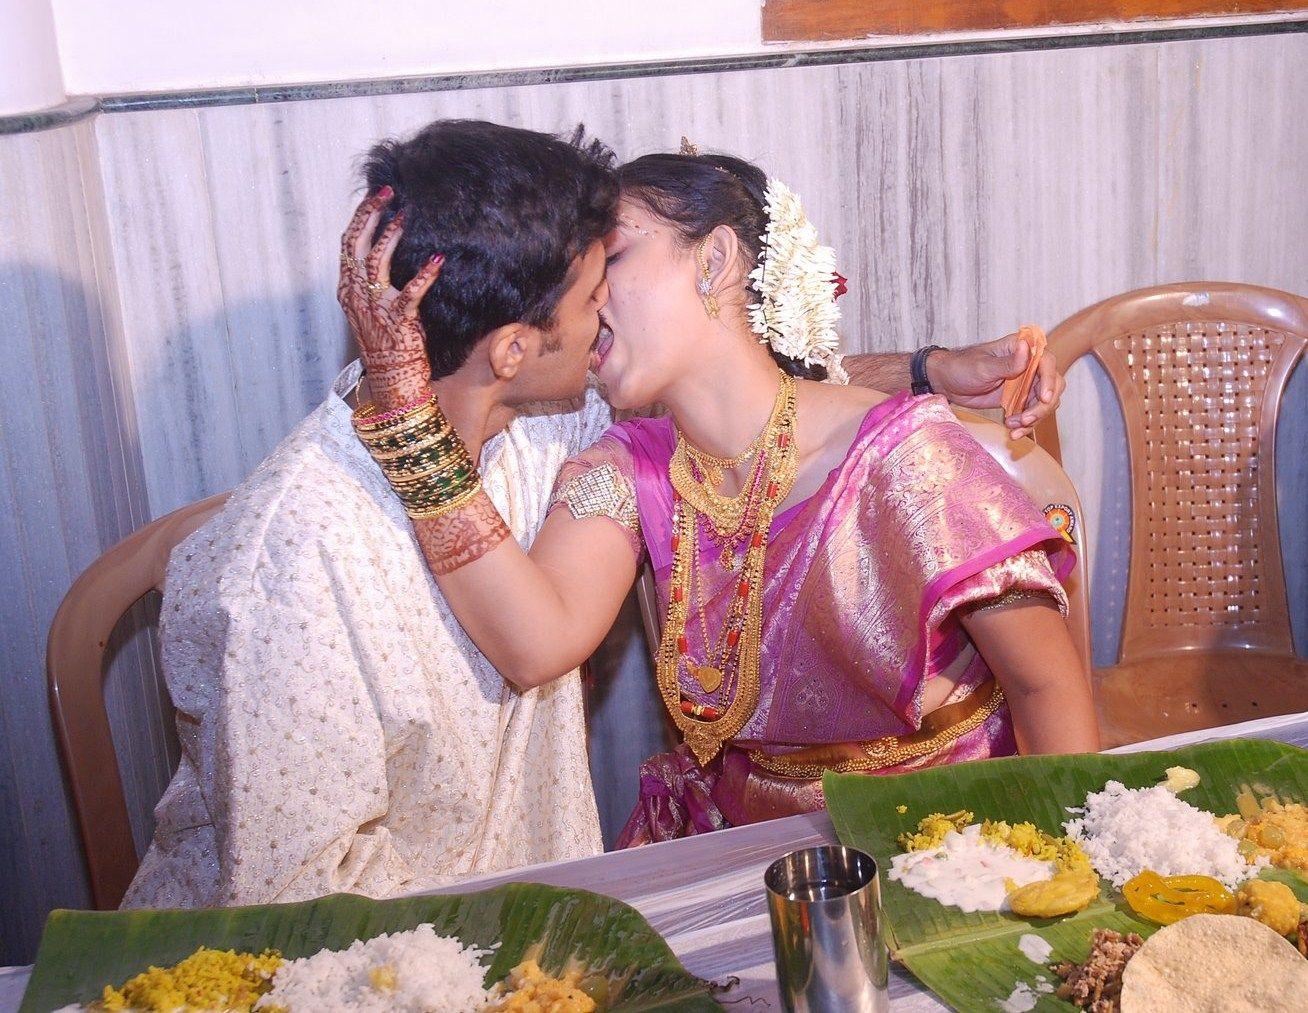 Indian boss wife photos